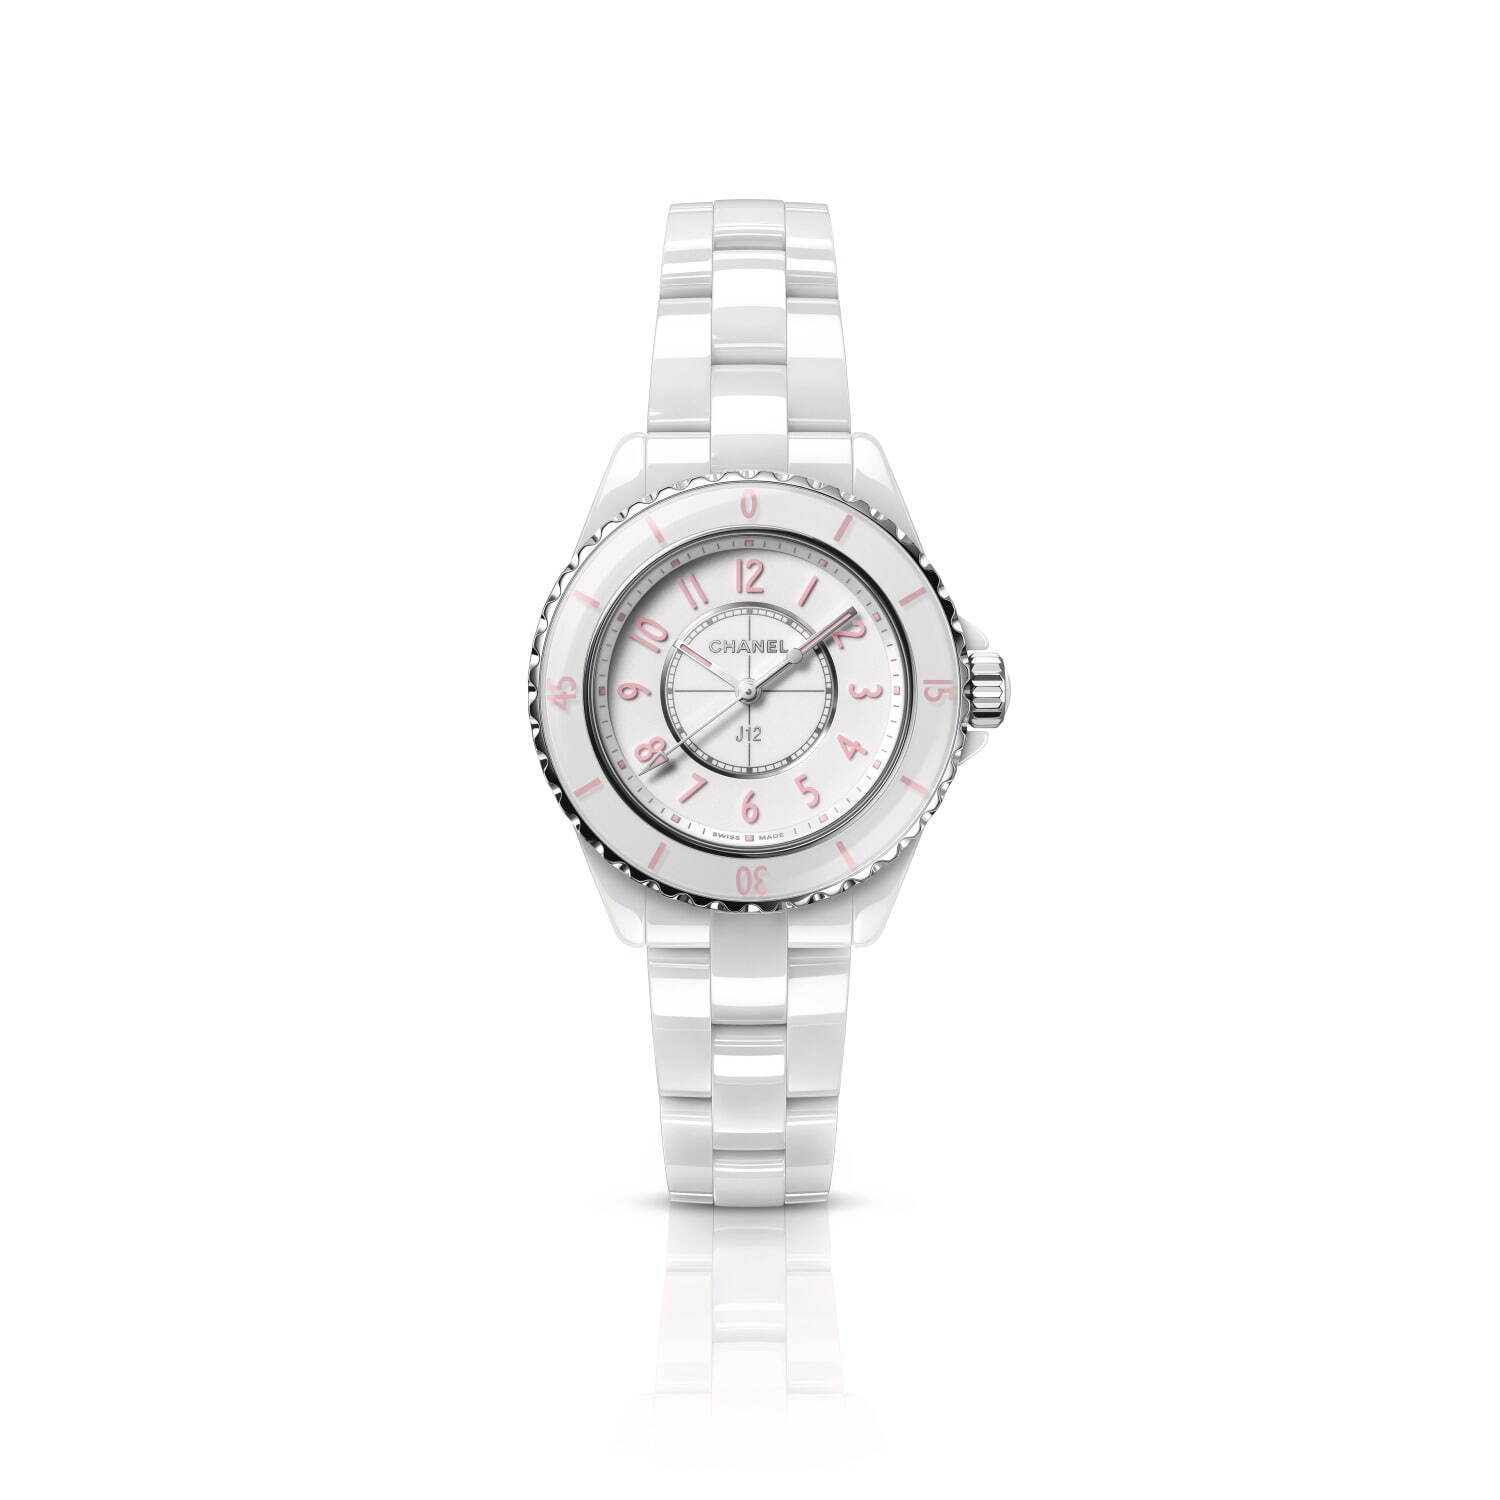 シャネルのアイコン腕時計 J12 新色 ホワイト ピンク 世界限定1 0本で ファッションプレス